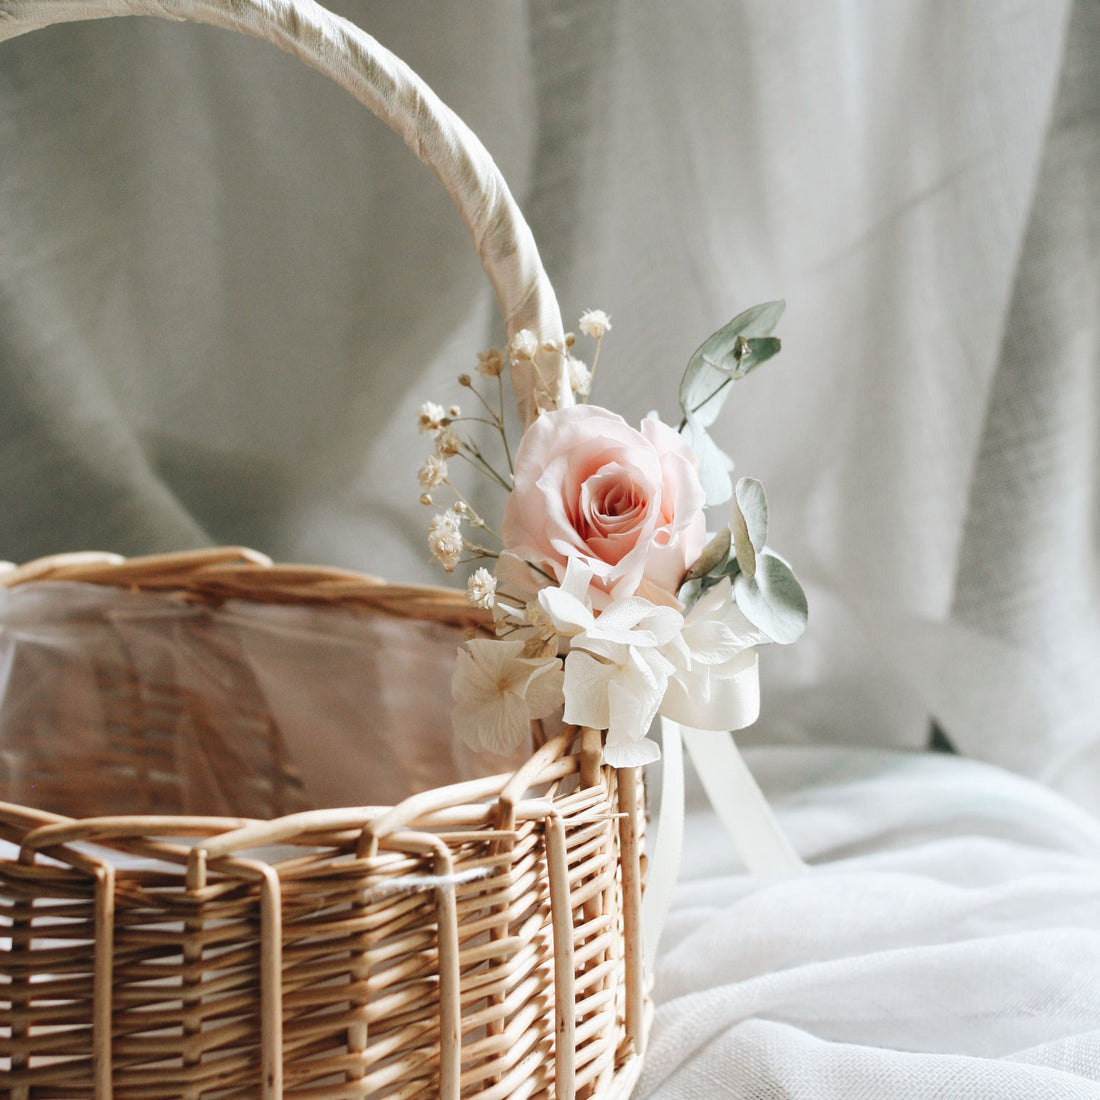 Wicker Flower Girl Baskets